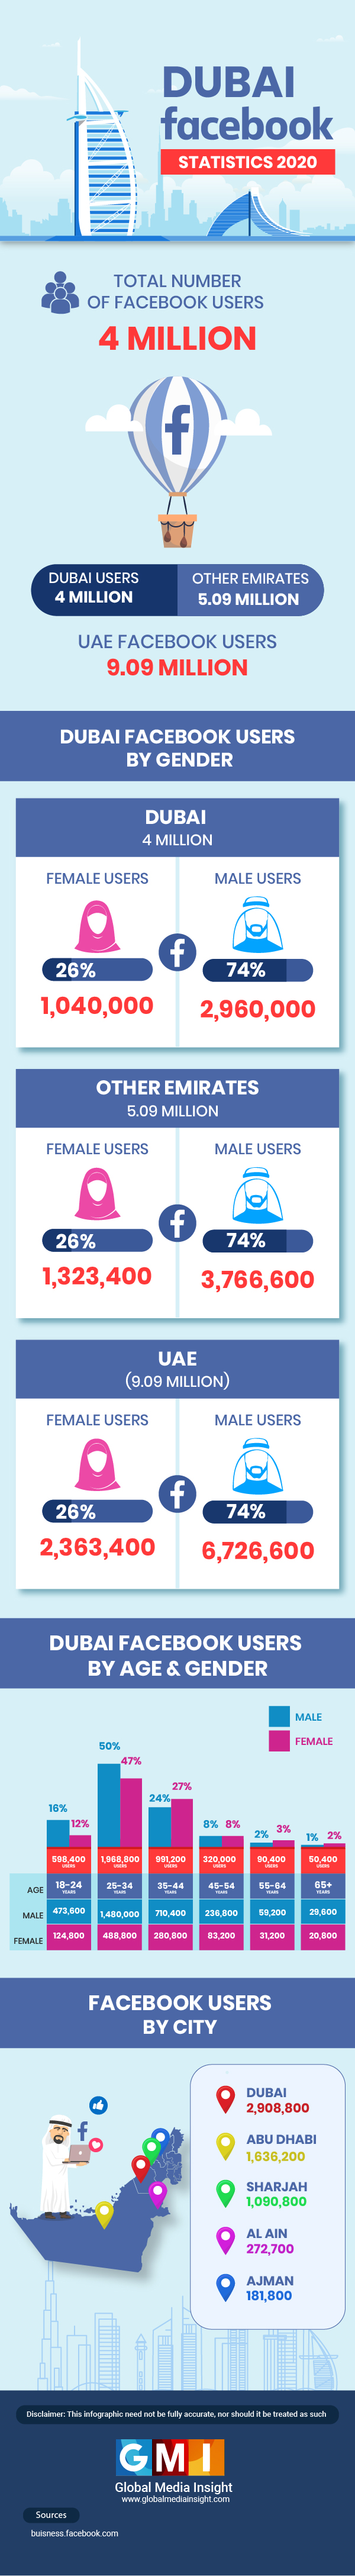 dubai Facebook statistics 2020